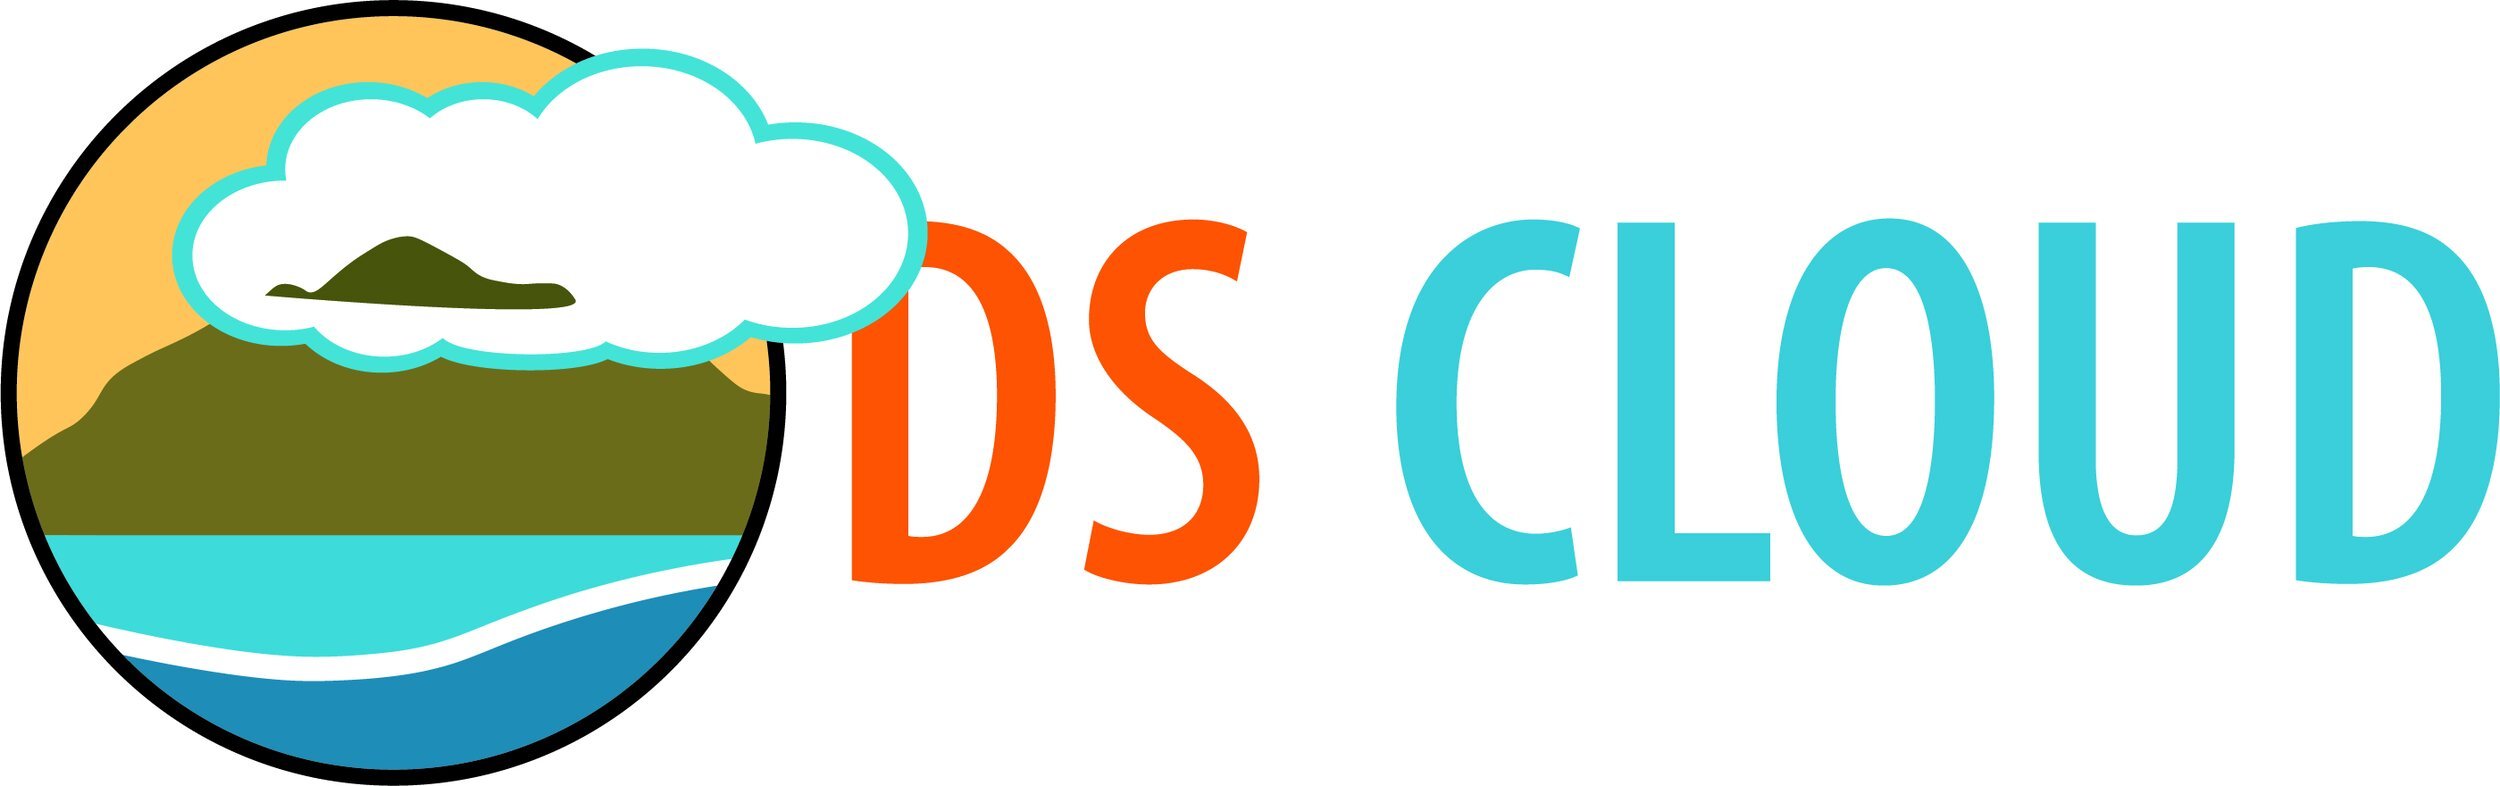 DS Cloud_logo_final.jpg